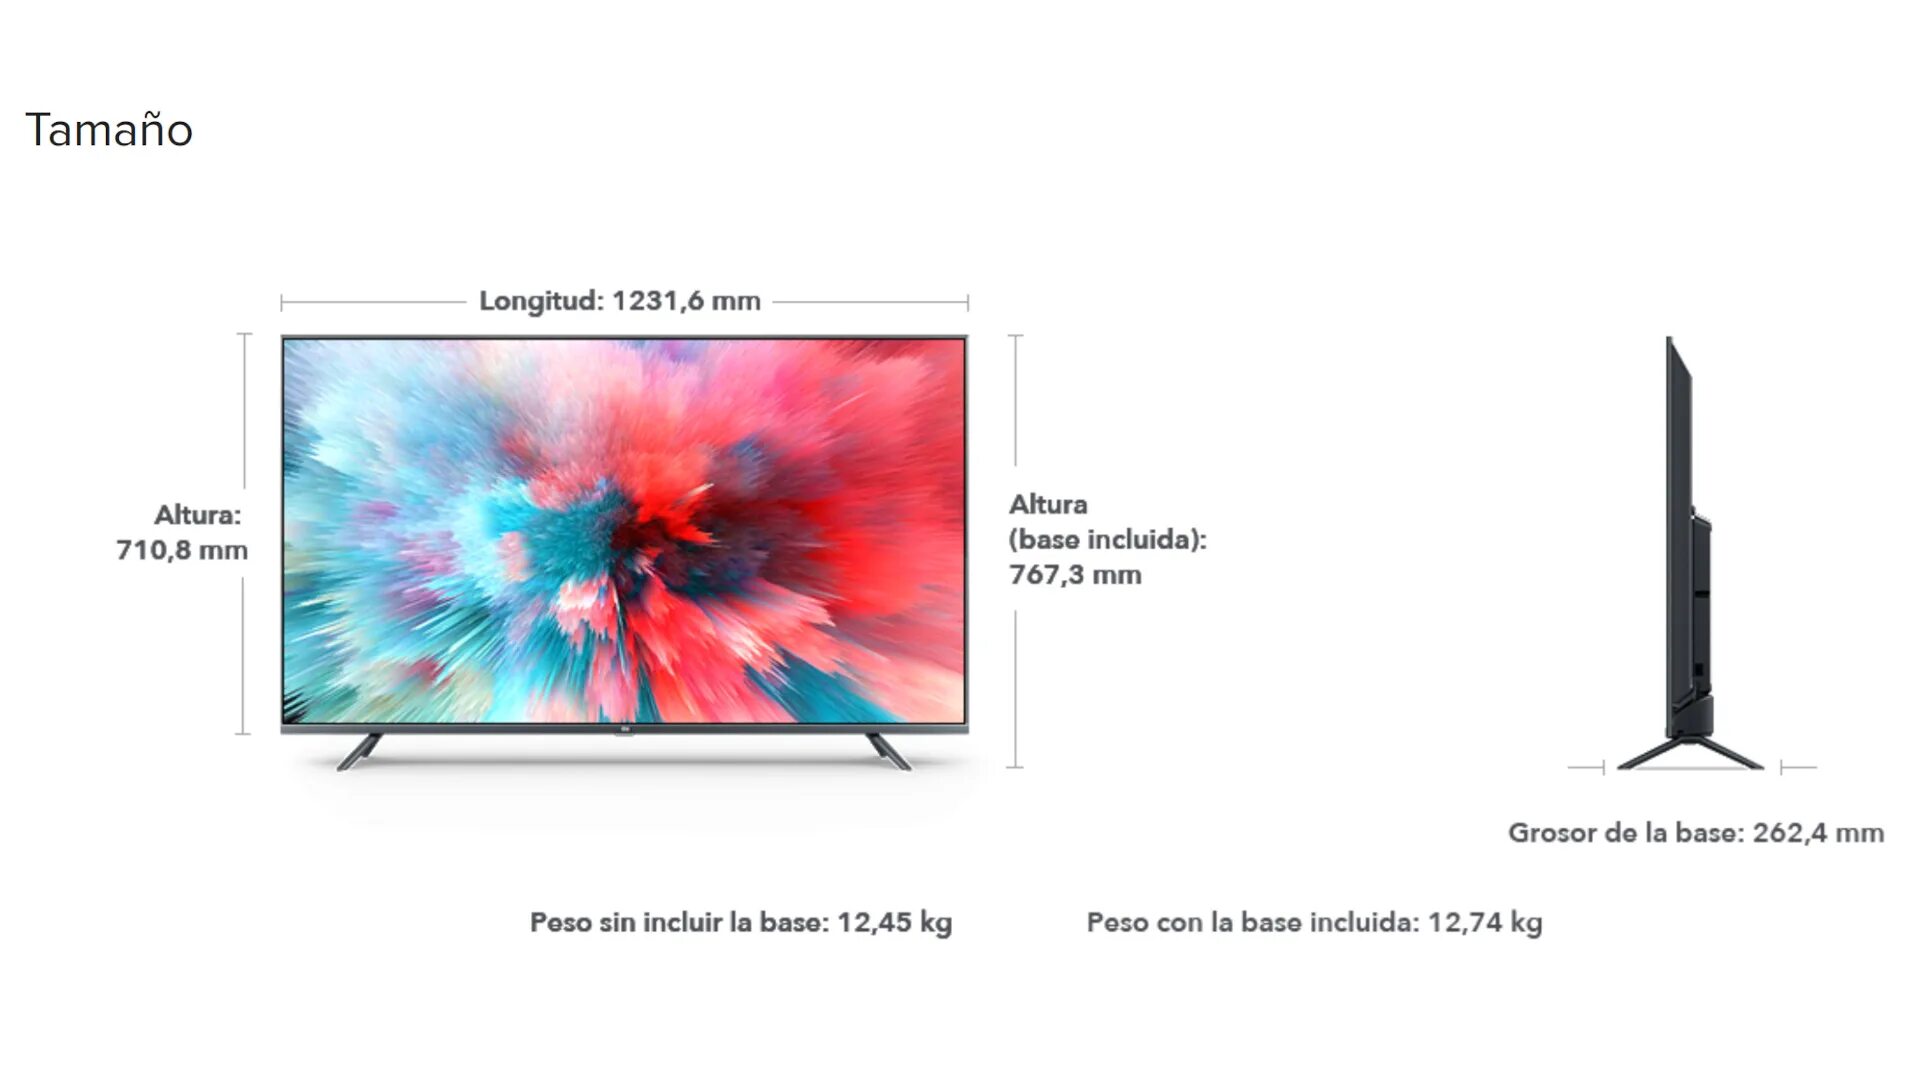 Телевизор высотой 50 см. Телевизор самсунг 55 дюймов габариты в см. Размер телевизора самсунг 50 дюймов. Xiaomi mi TV 4s 55 Размеры. Телевизор самсунг 55 Размеры.